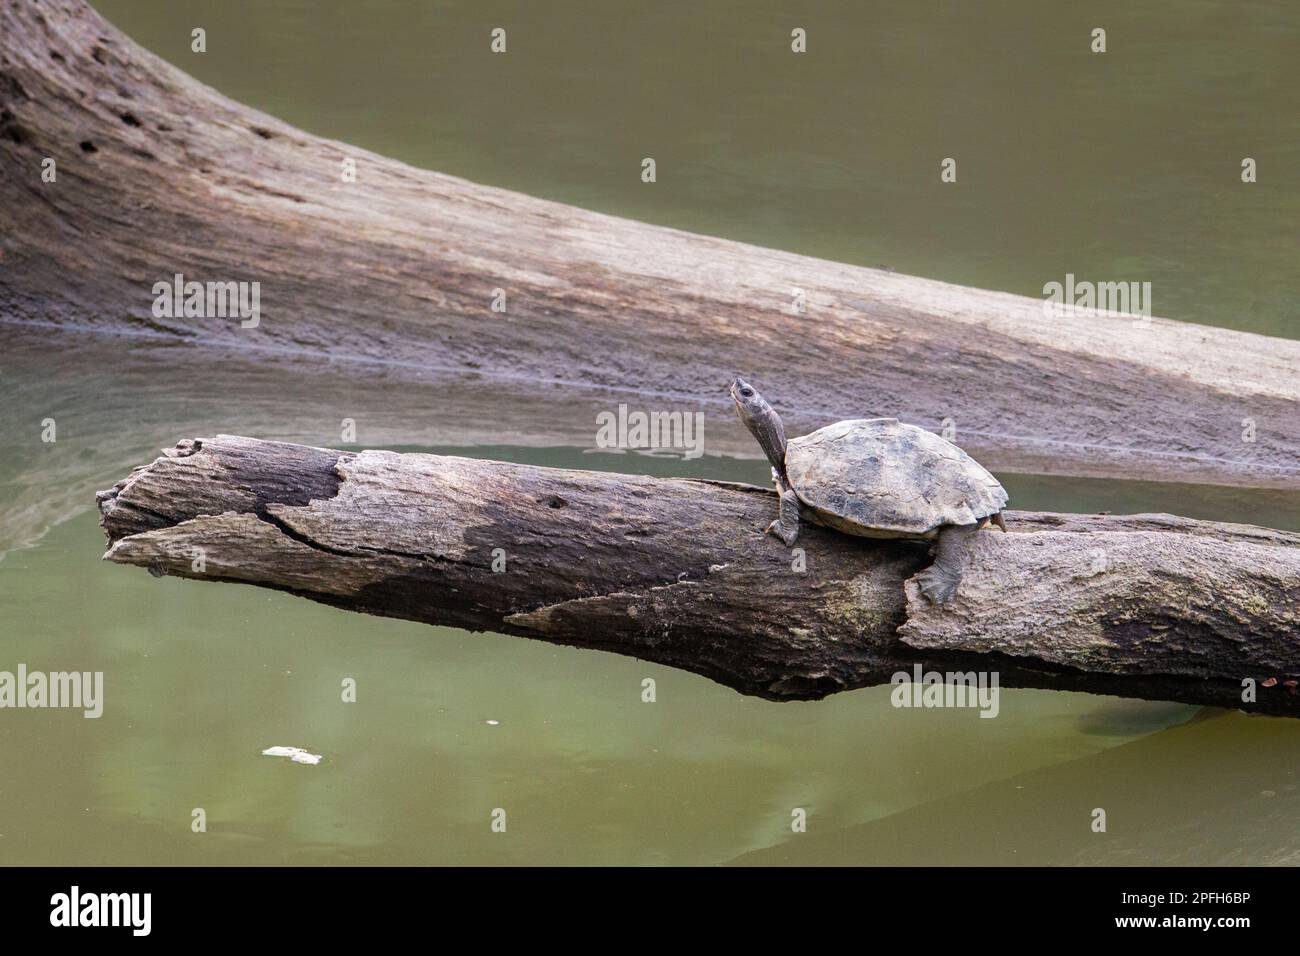 La tortue couverte d'Assam ou la tortue couverte de Sylhet, Pangshura sylhetensis. Famille Geoemydidae. Parc national de Kaziranga, Assam, Inde Banque D'Images